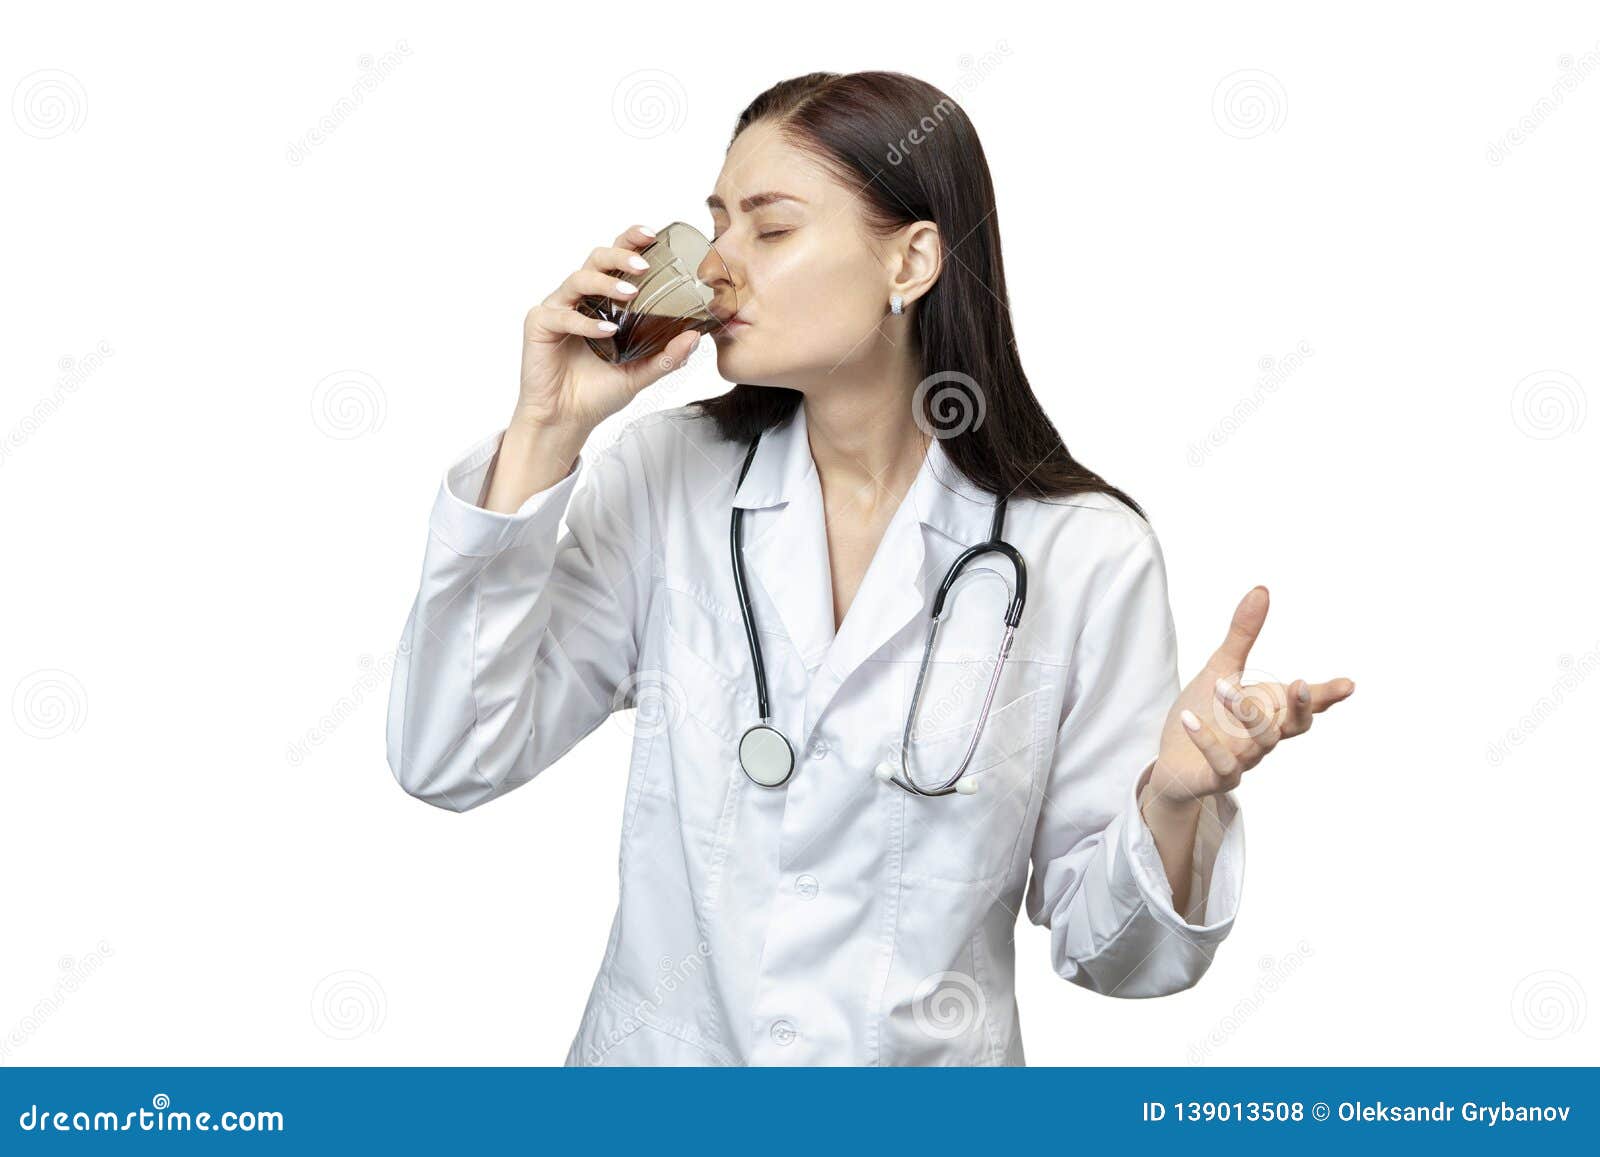 Врачи пьют много. Врачи пьют Сток. Женщина доктор пьет. Женщина врач пьющая. Врачи выпивают.